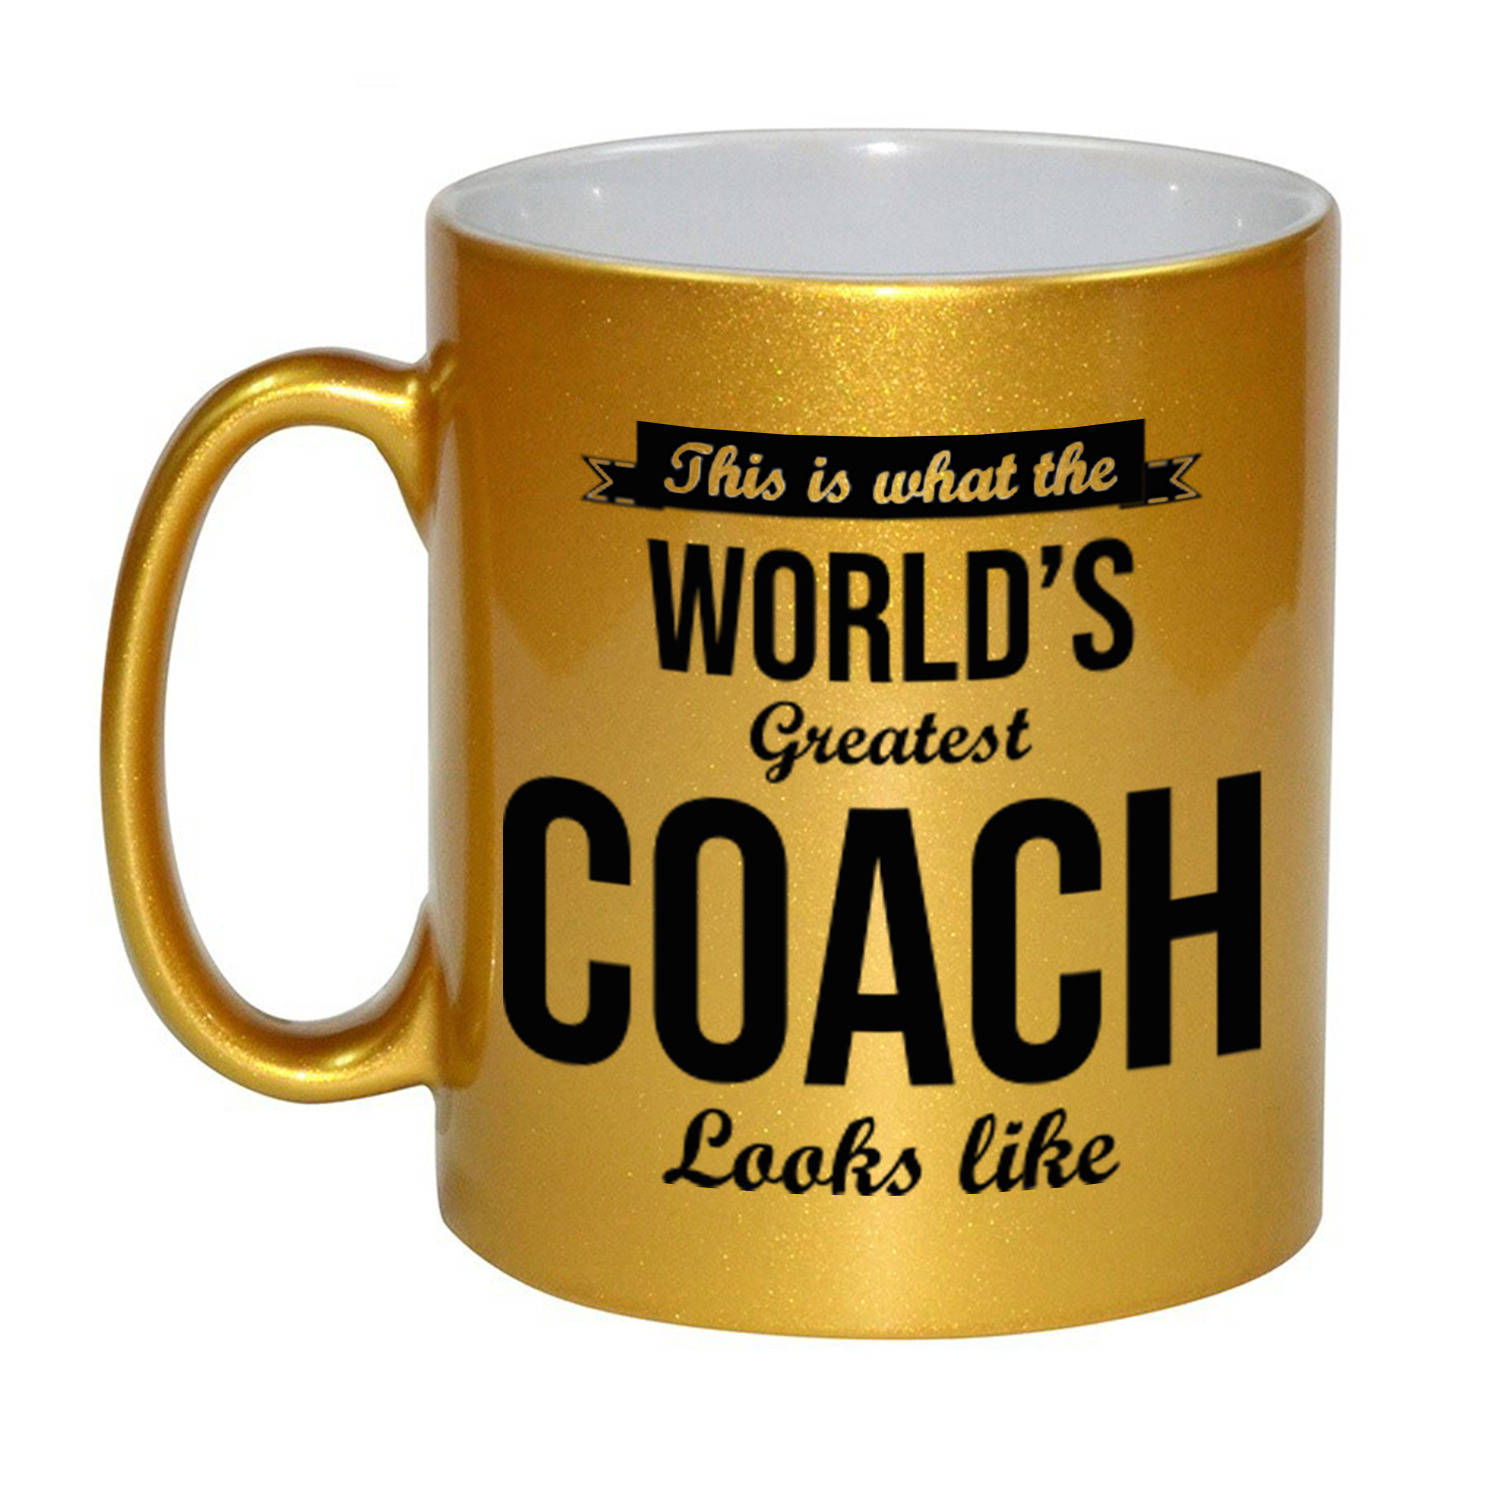 Worlds Greatest Coach cadeau mok / beker goudglanzend 330 ml - feest mokken